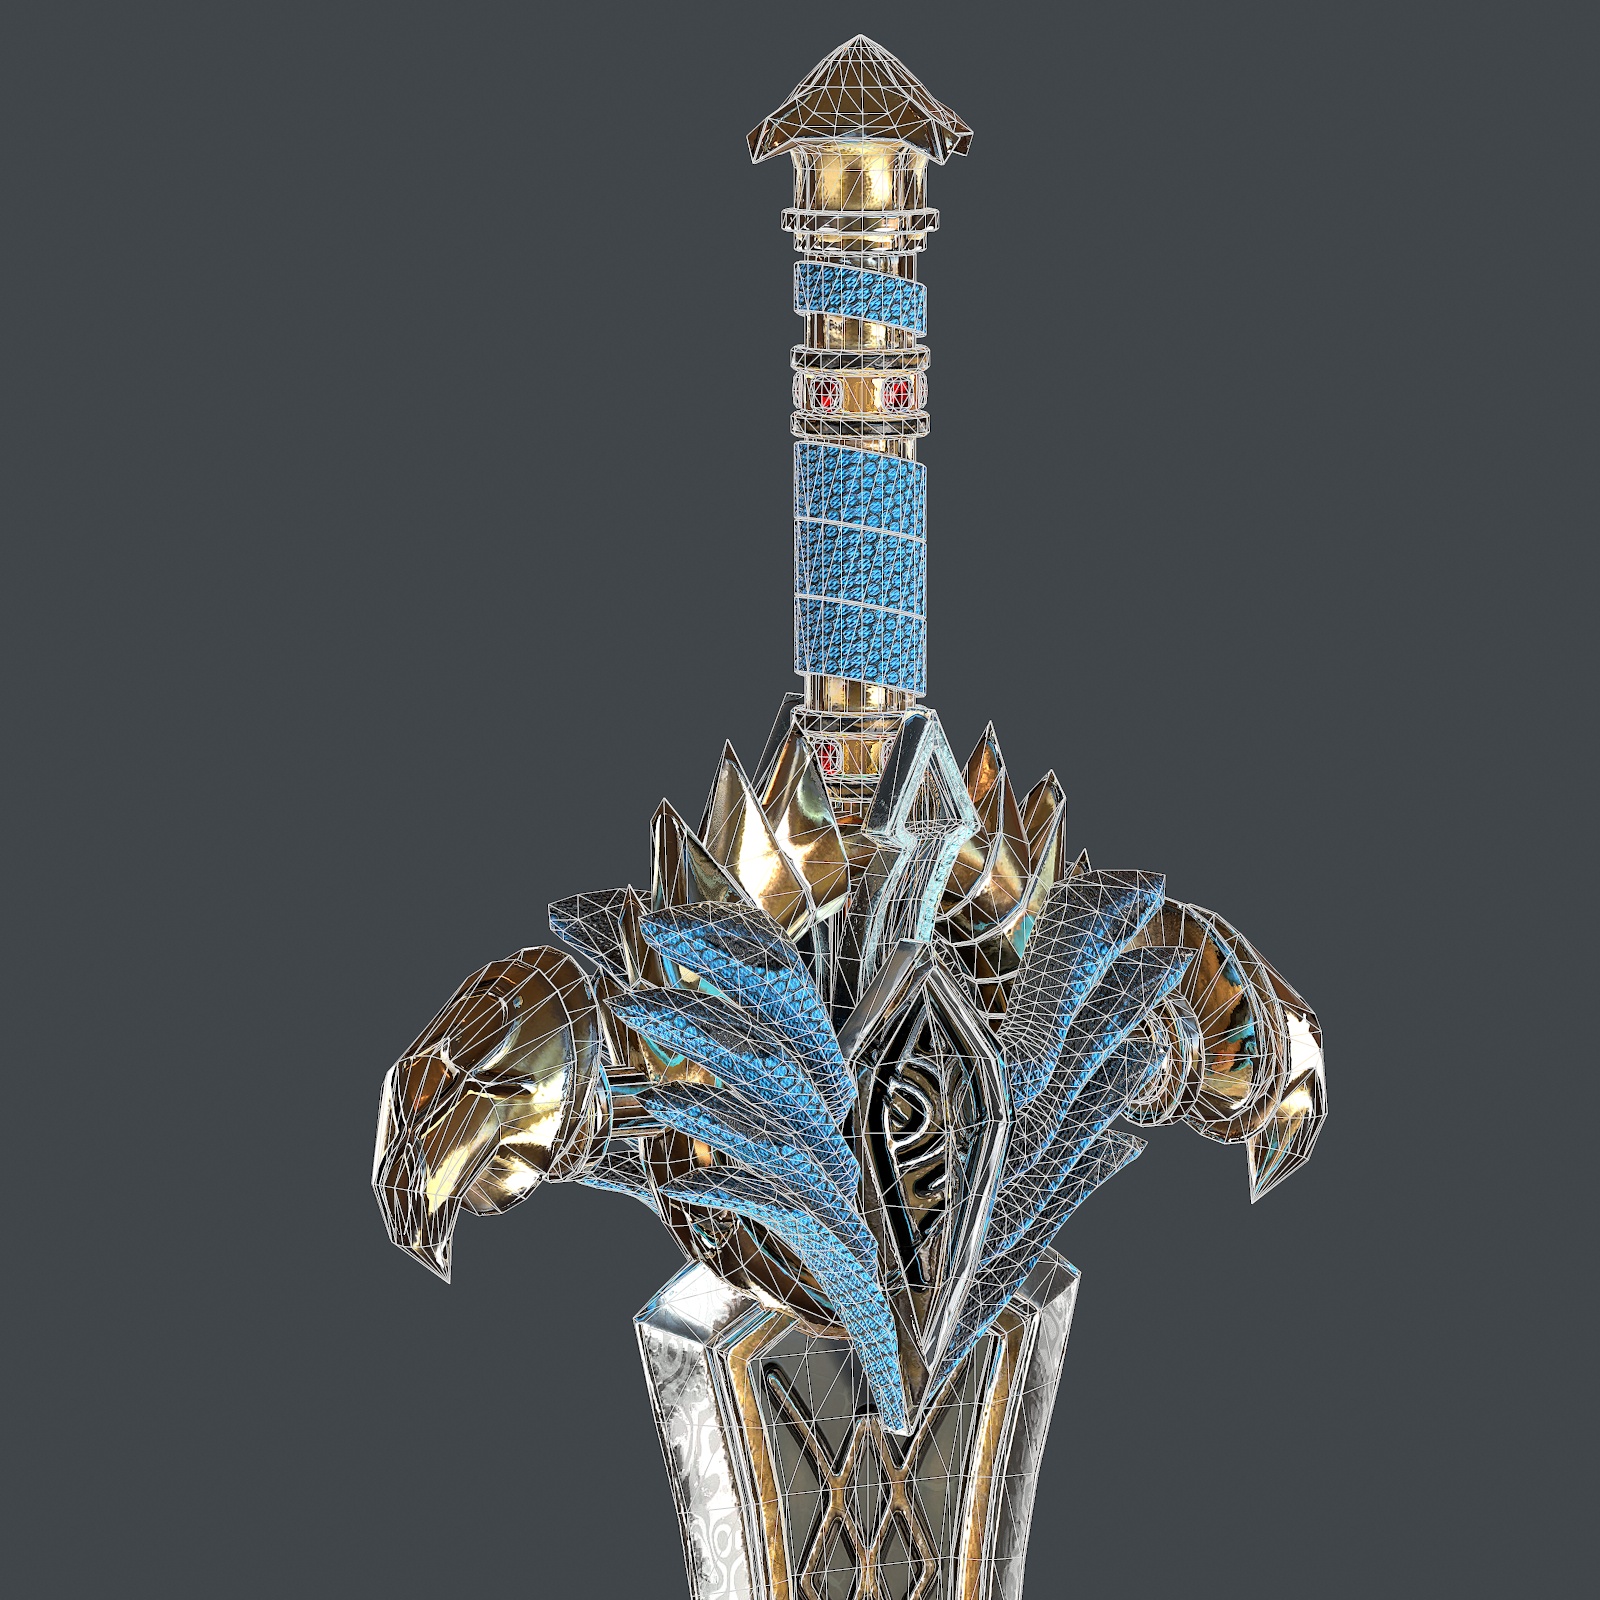 modèle 3D de Épée fantastique 25 avec fourreau modèle 3D acheter - rendu